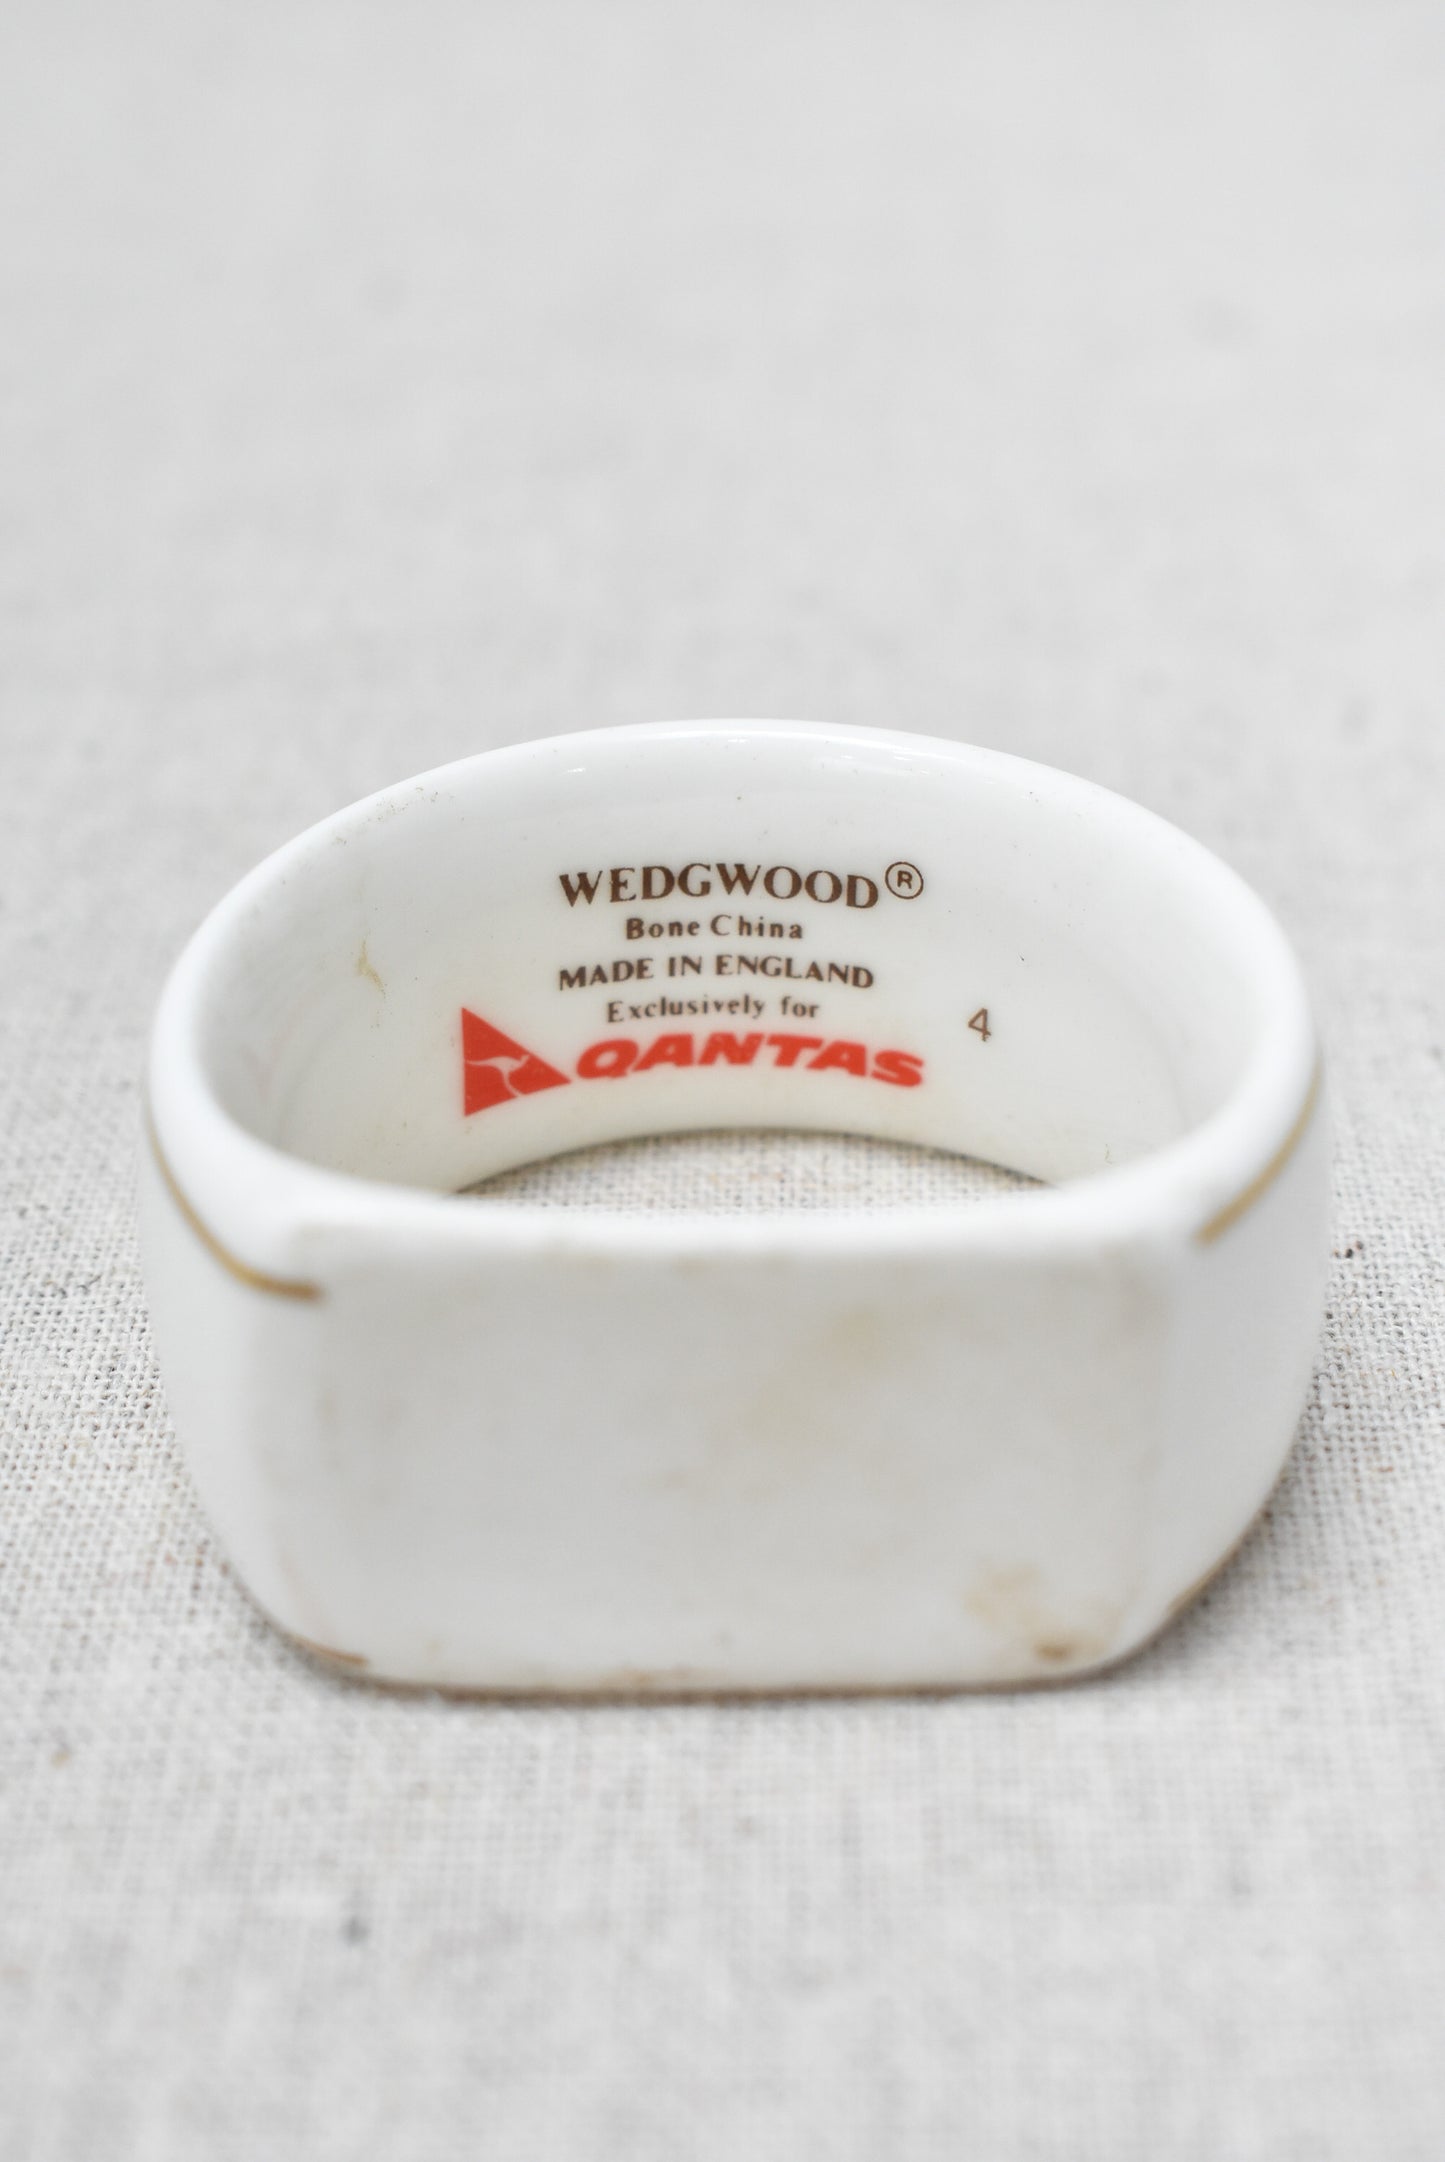 Wedgewood bone china Quantas napkin rings